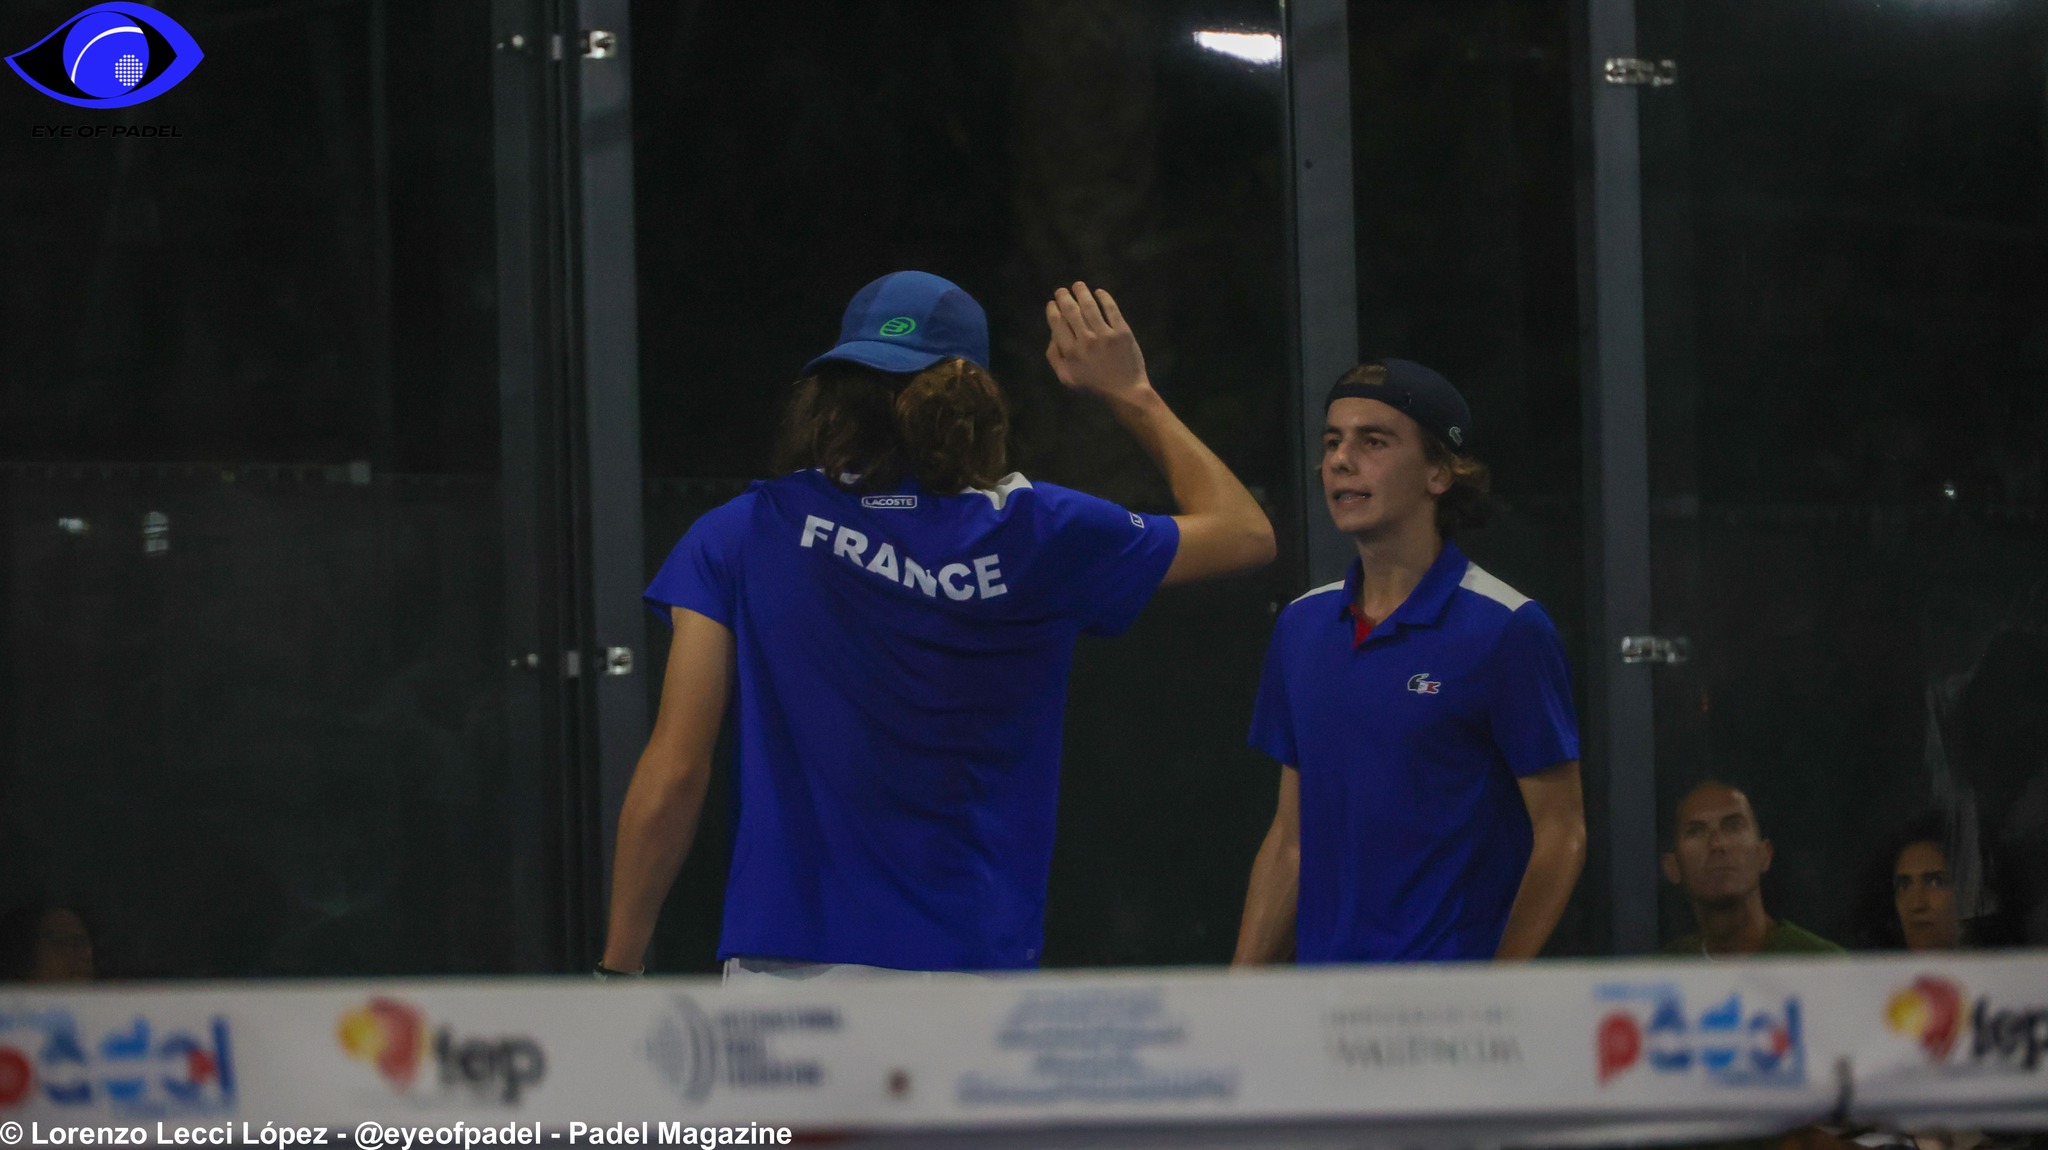 LIVE Europei Juniores: Francia vs Olanda (M)